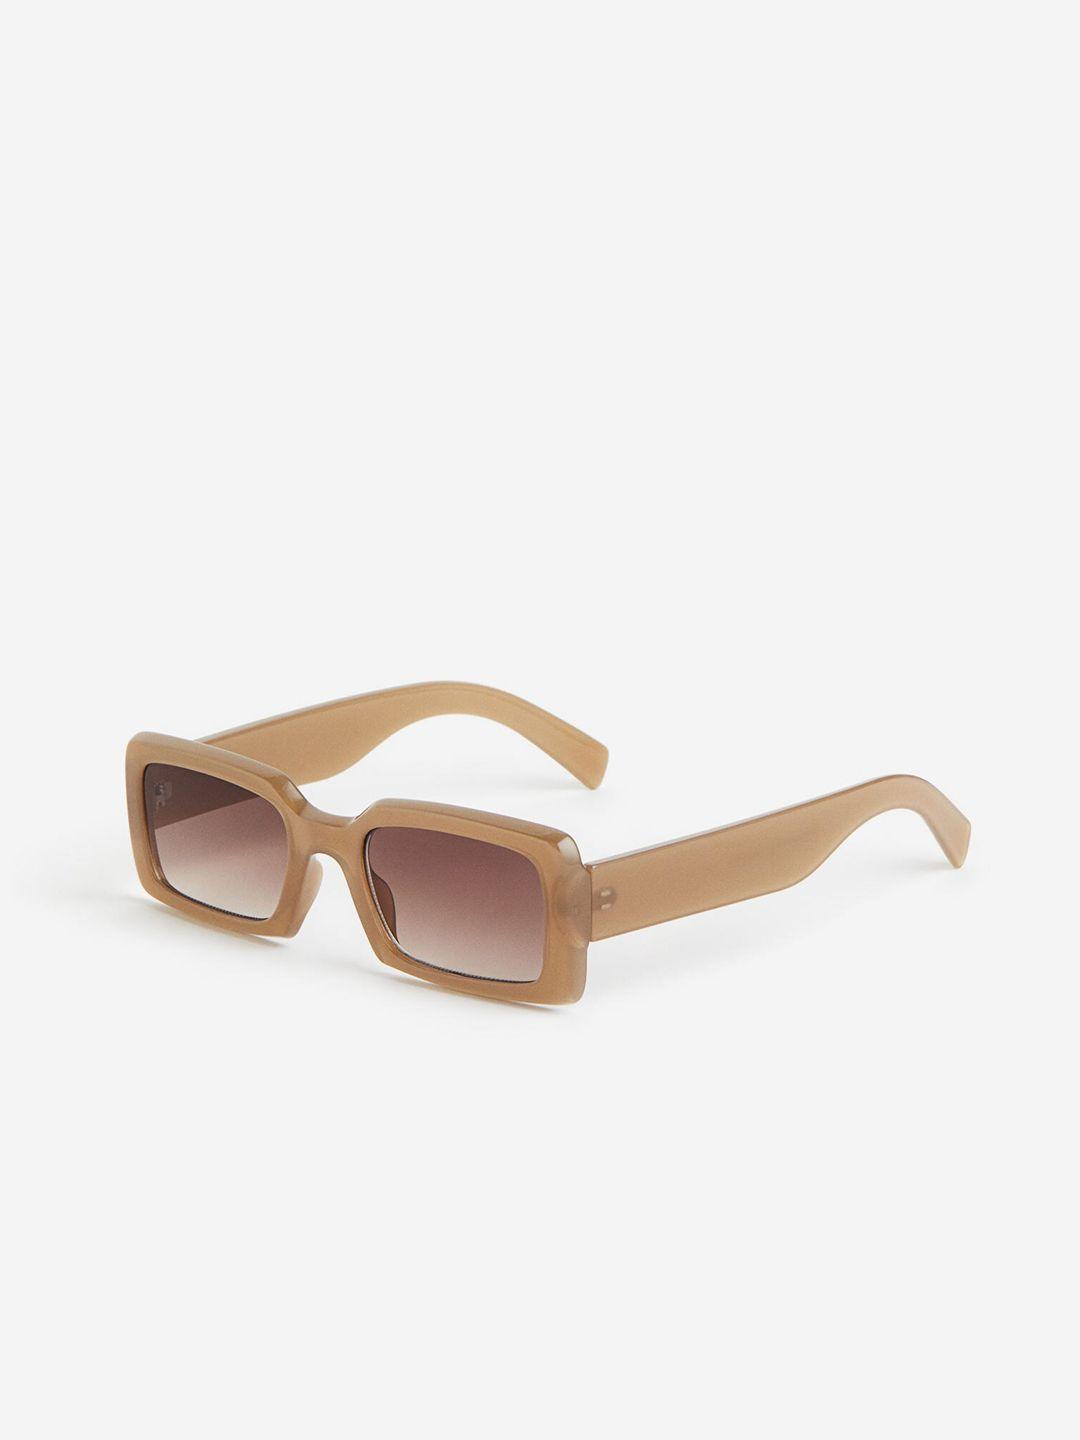 h&m rectangular sunglasses